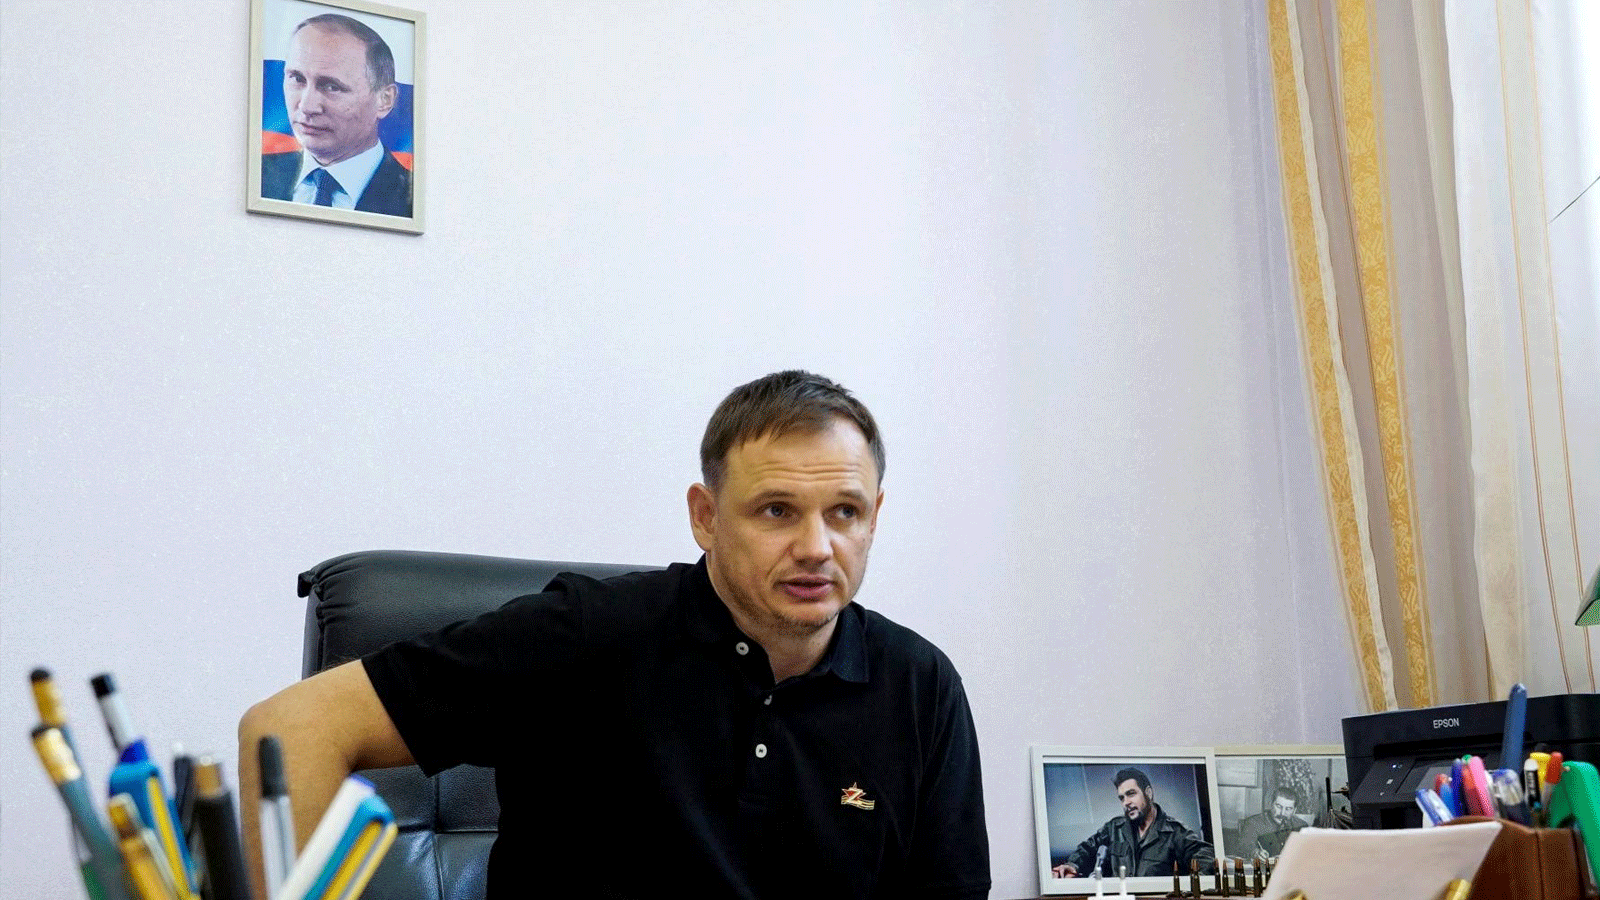 كيريل ستريموسوف، نائب رئيس إدارة خيرسون المدعومة من روسيا، في مكتبه في مدينة خيرسون